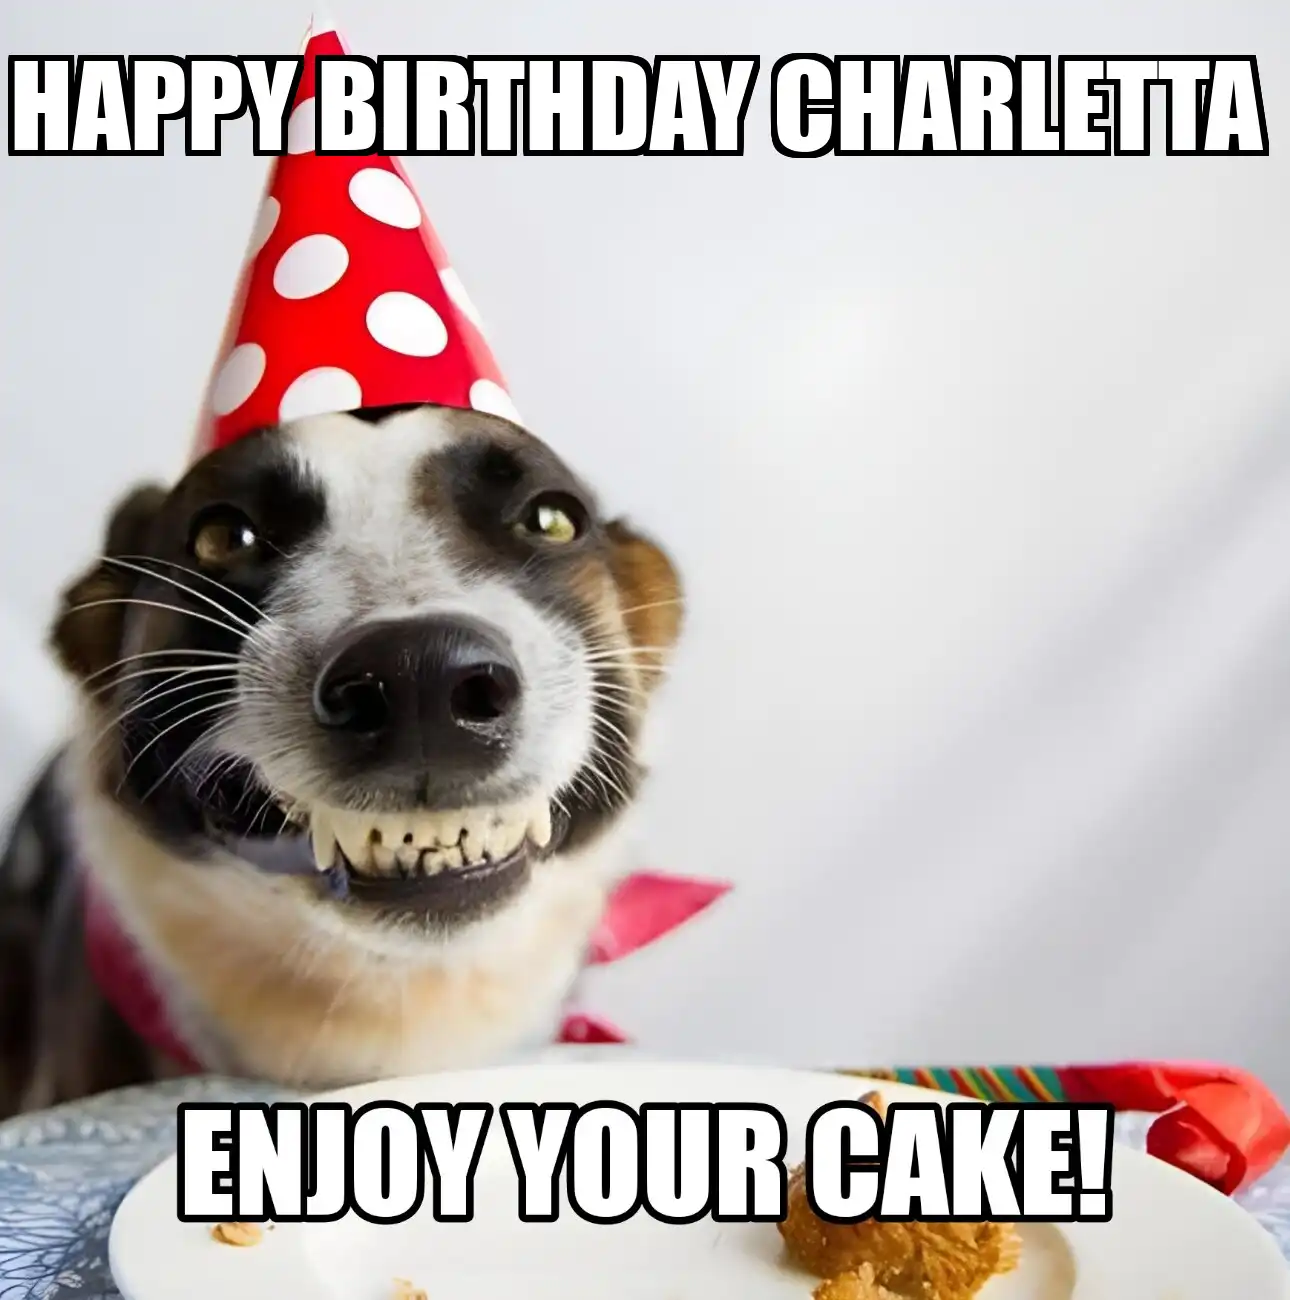 Happy Birthday Charletta Enjoy Your Cake Dog Meme